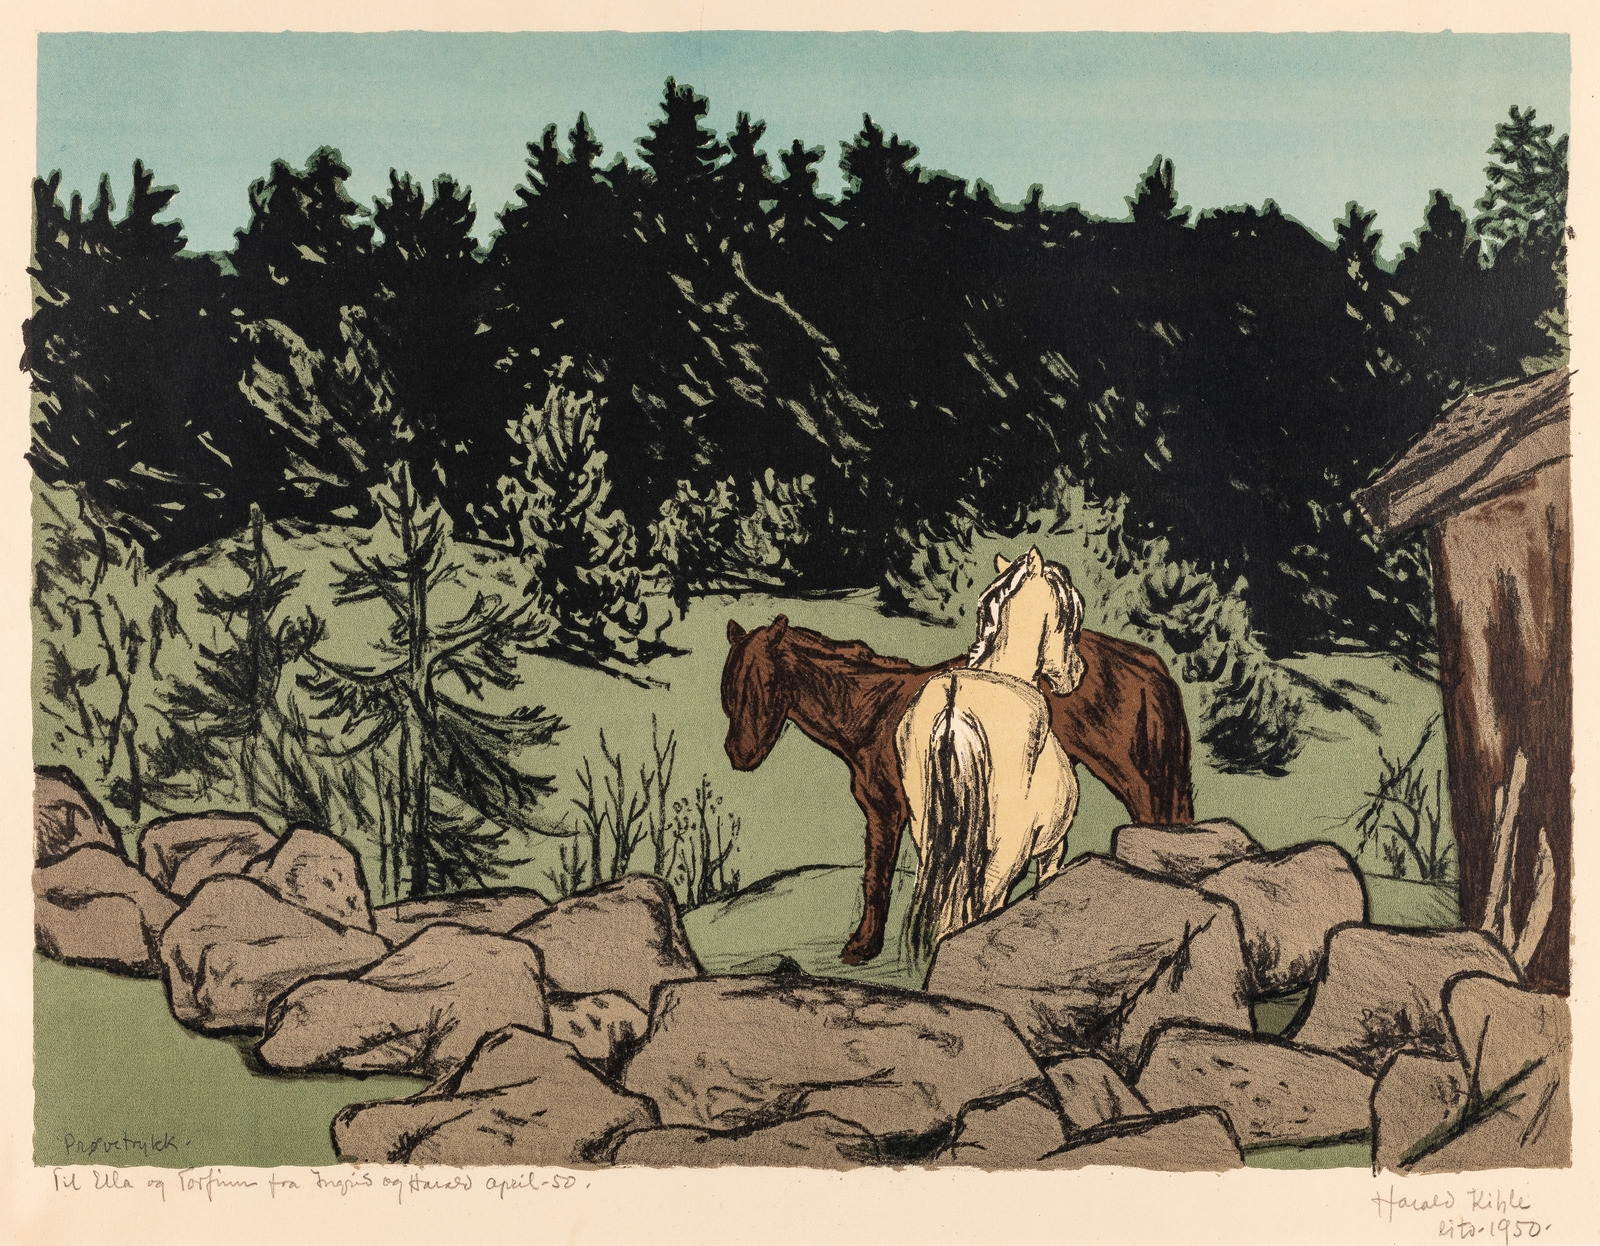 Hestens fortrolighet by Harald Kihle, 1950